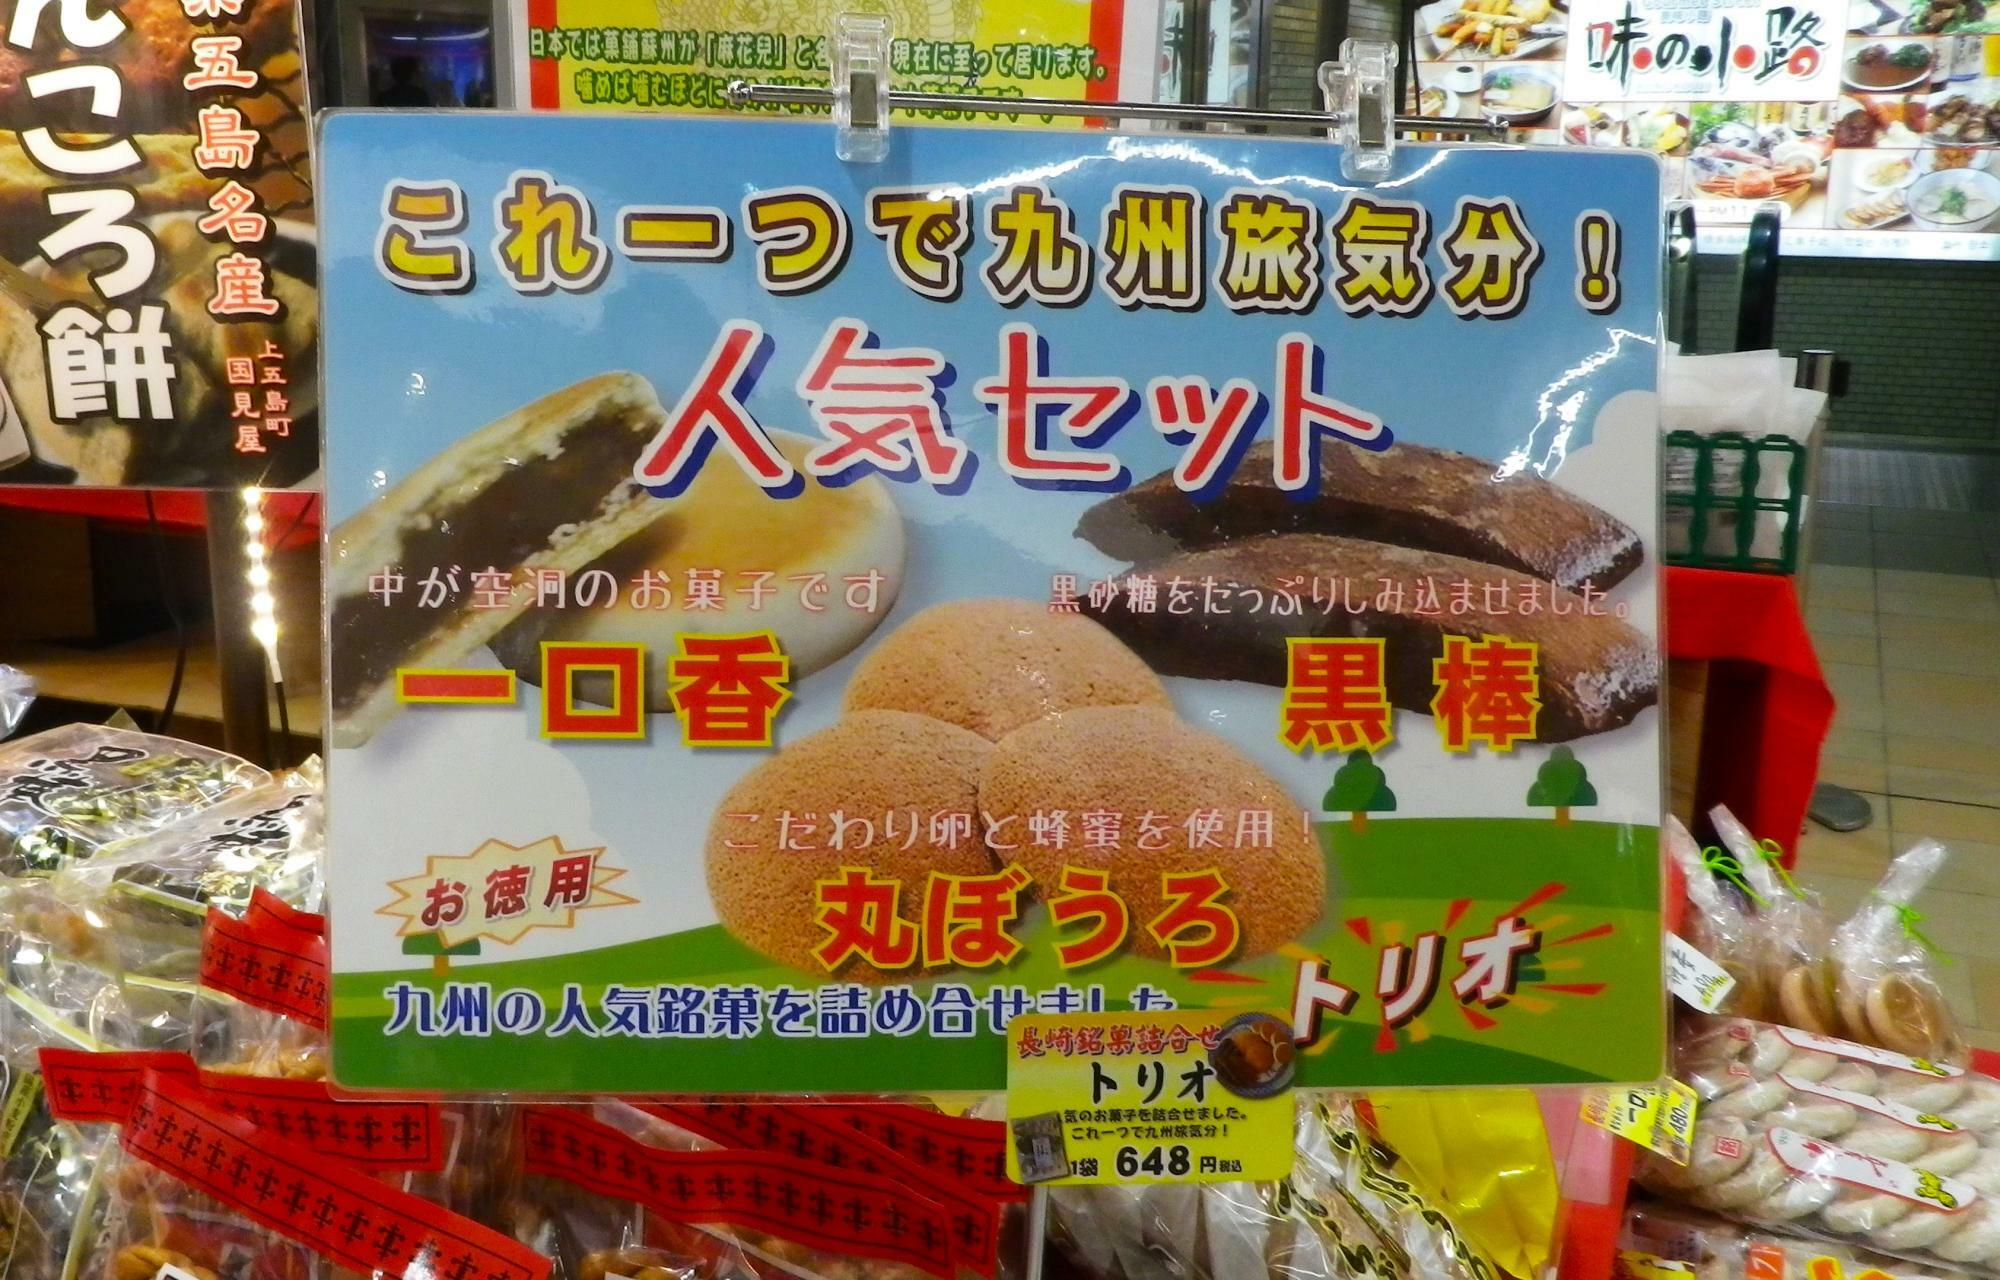 懐かしい味の九州銘菓の詰め合わせ。